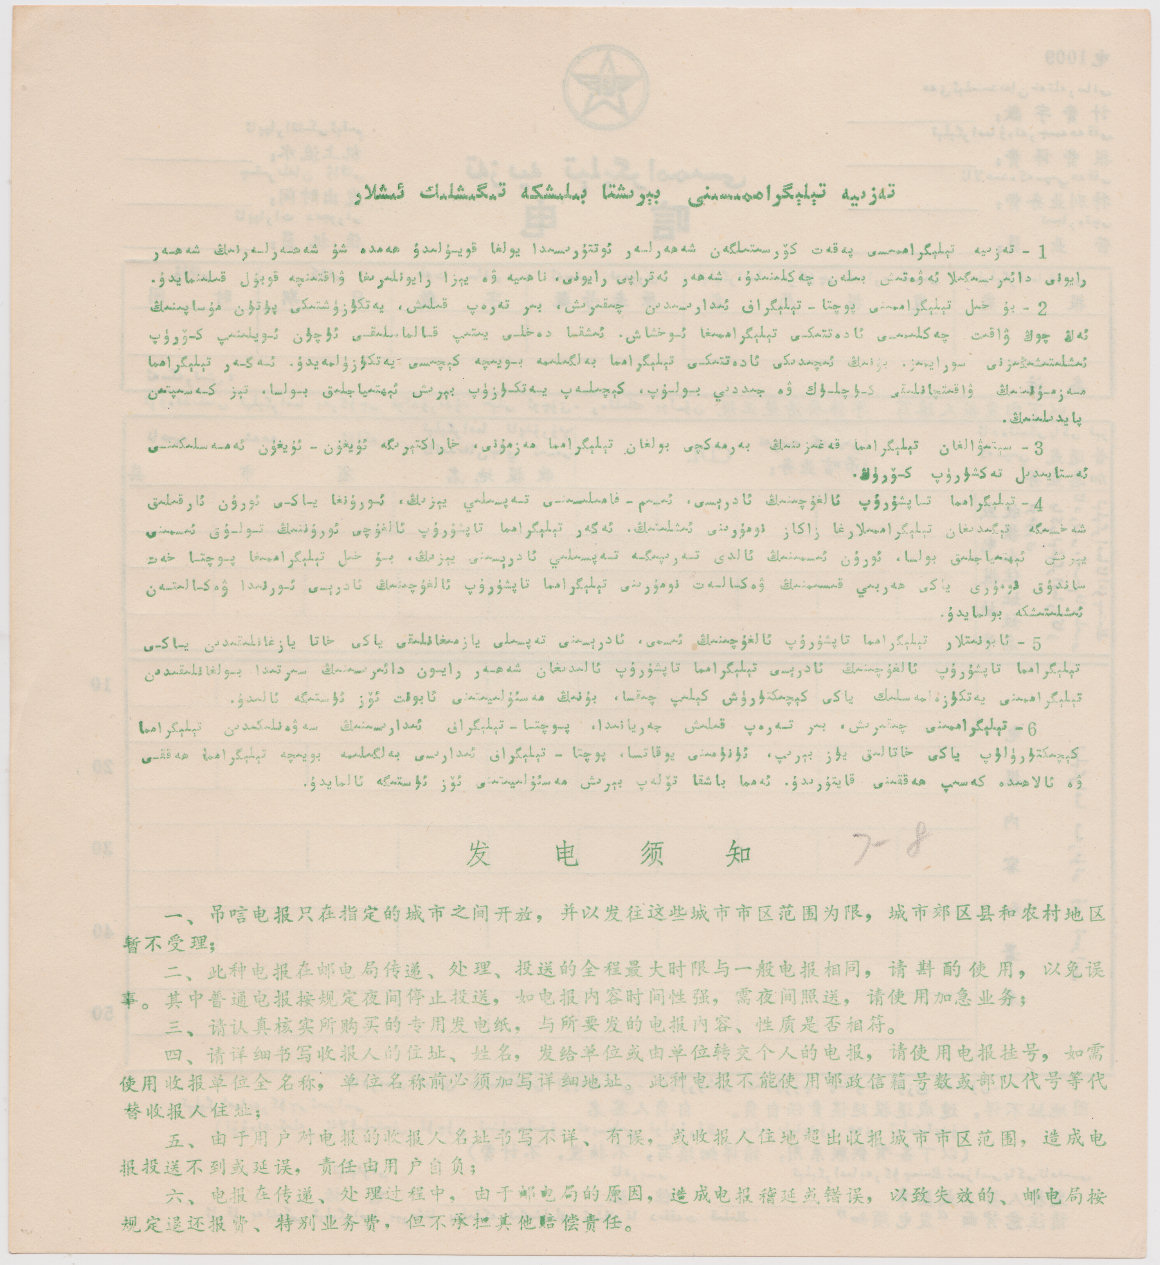 Xinjiang form 1009 - back